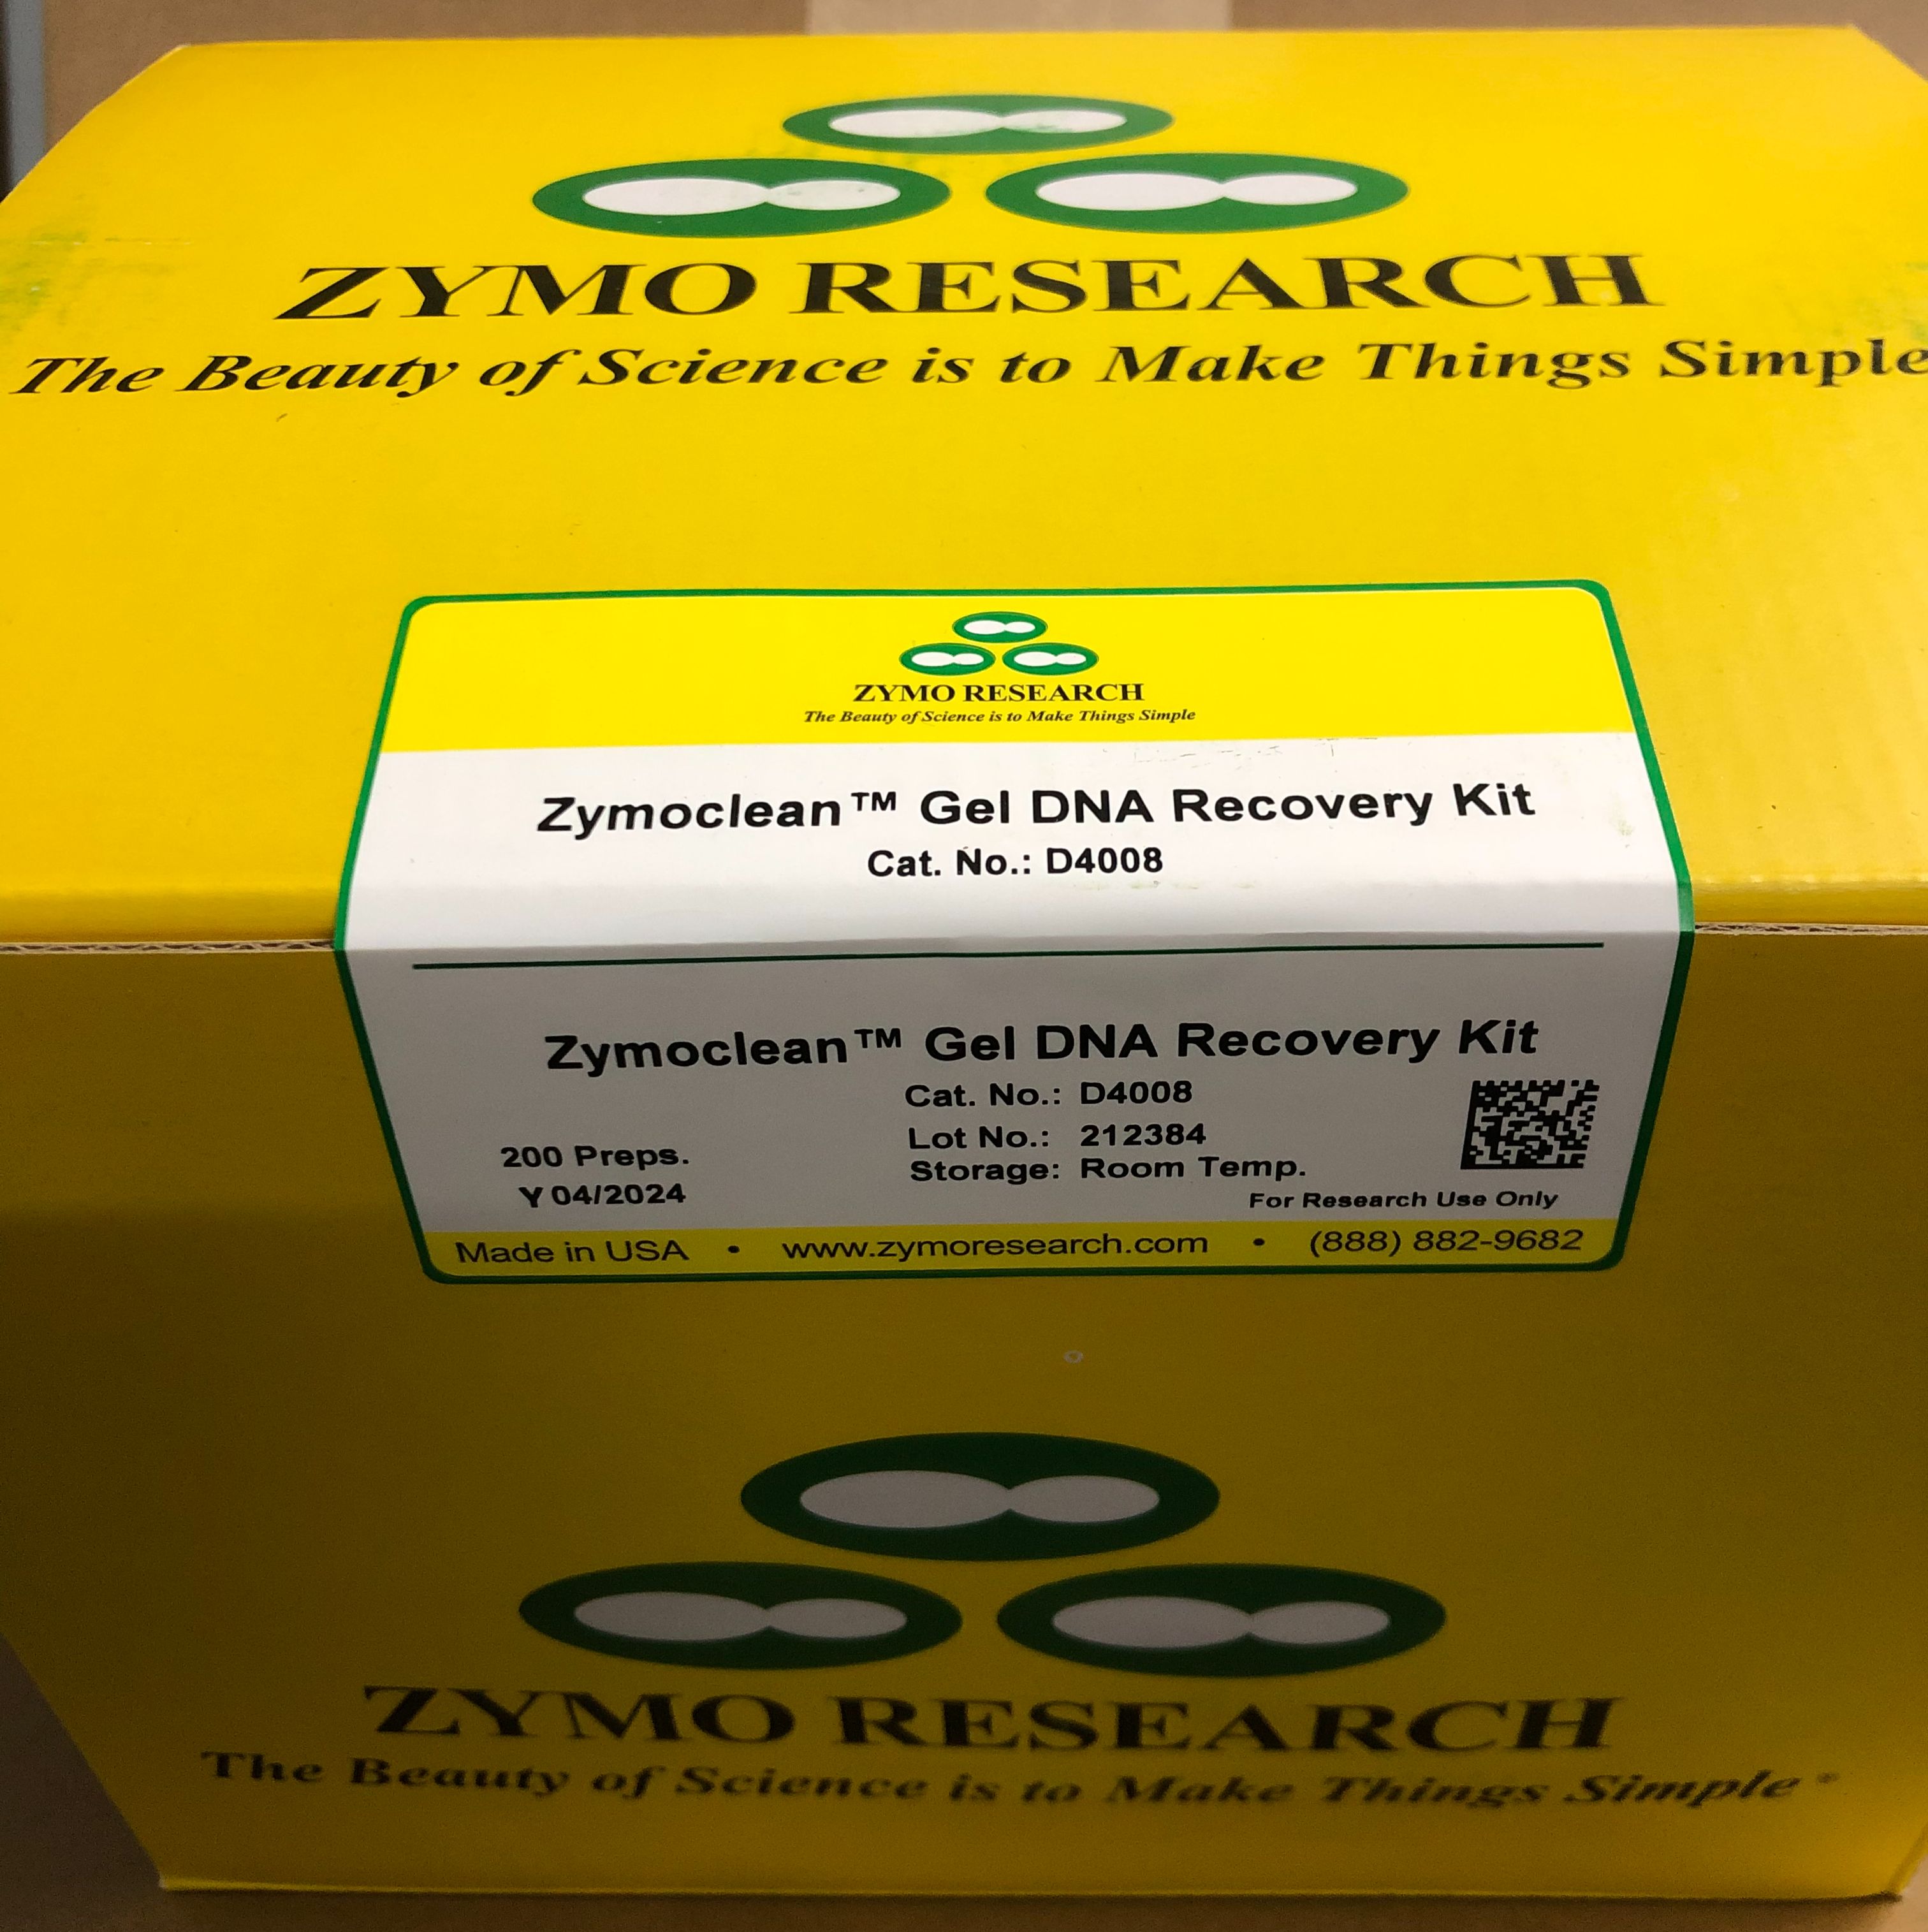 Zymo Research货号D4008胶回收试剂盒13611631389上海睿安生物